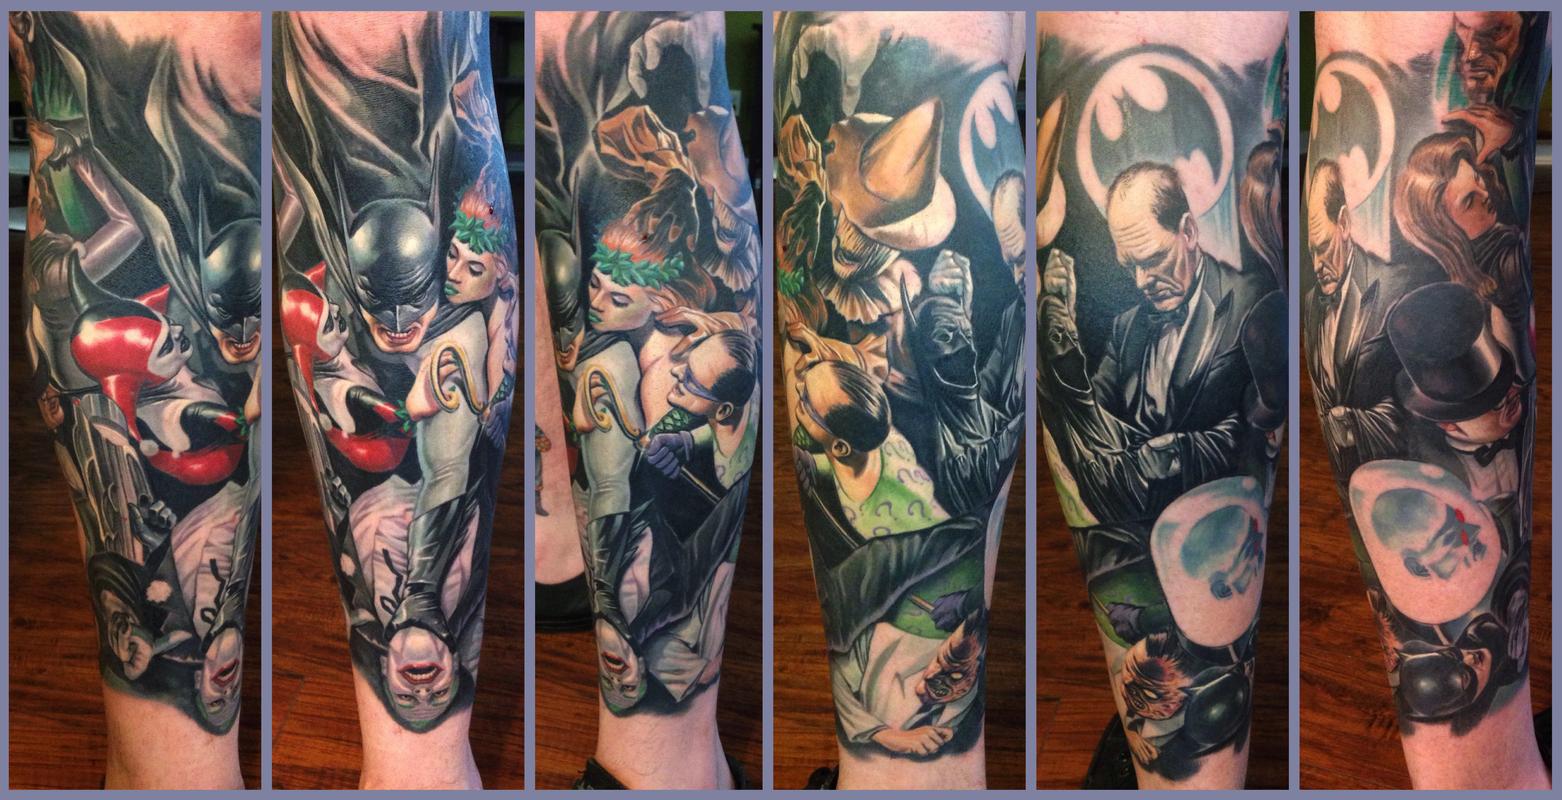 Batman tattoo  batman and joker tattoo  cartoon tattoos  trending comic  tattoos  leg tattoo idea  YouTube